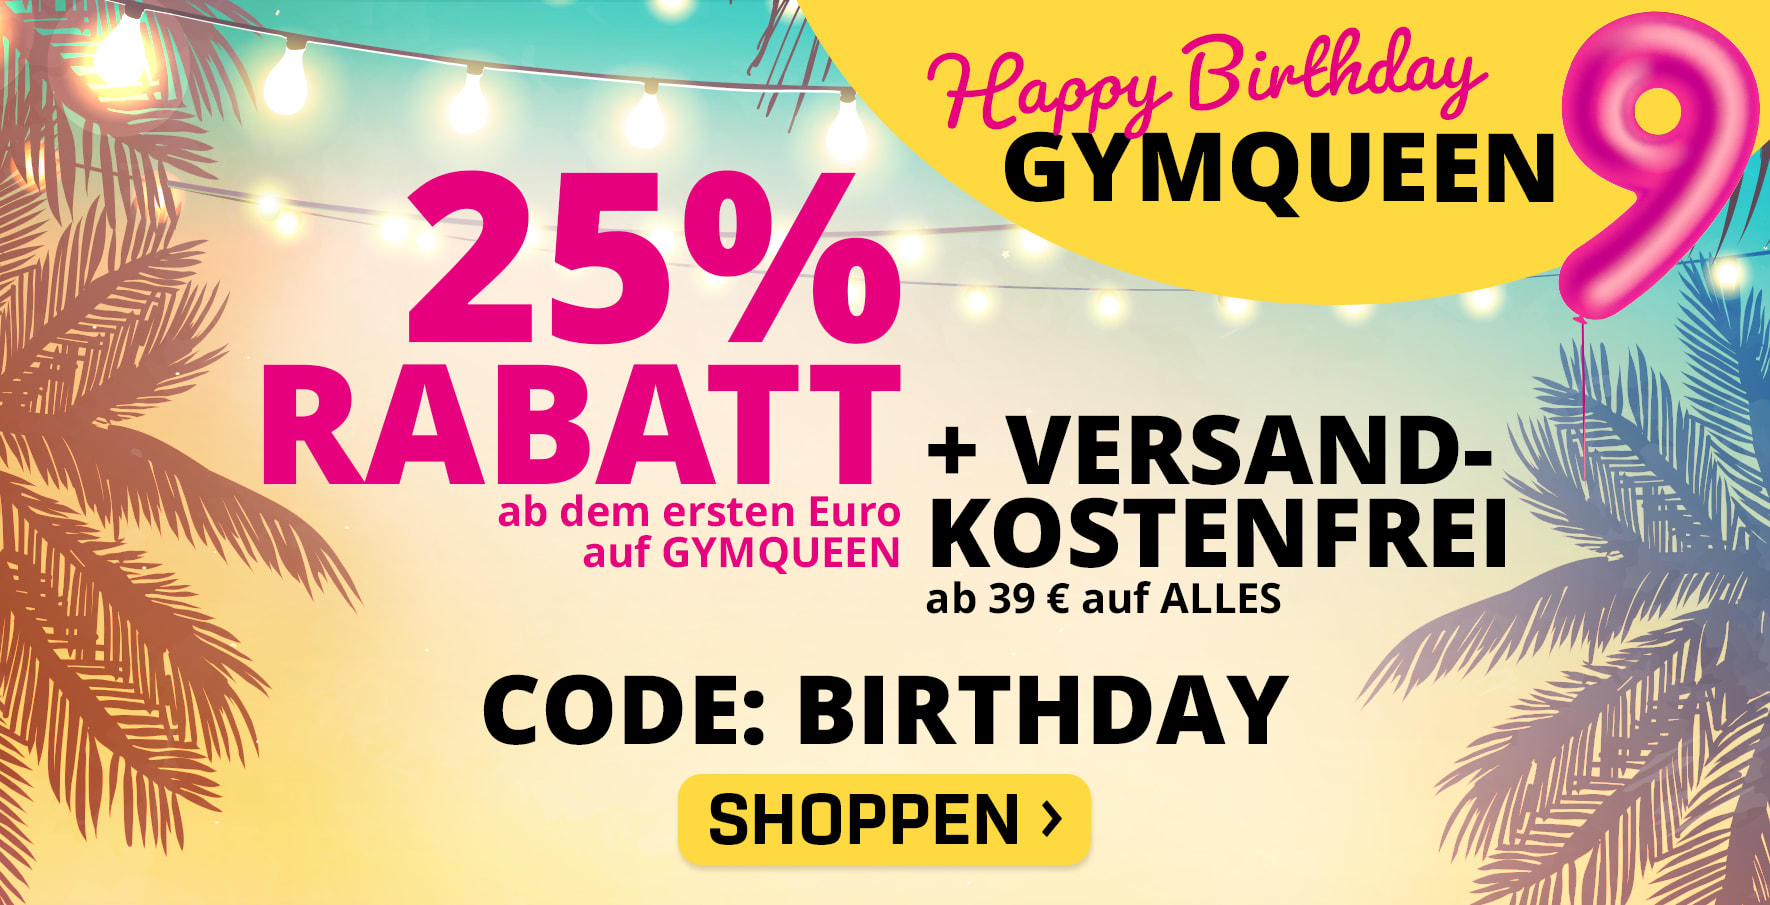 Happy Birthday GYMQUEEN! Feier mit uns und sichere dir 25% ab dem ersten Euro auf GYMQUEEN & versandkostenfreie Lieferung auf ALLE Produkte ab nur 39 € mit dem Code BIRTHDAY